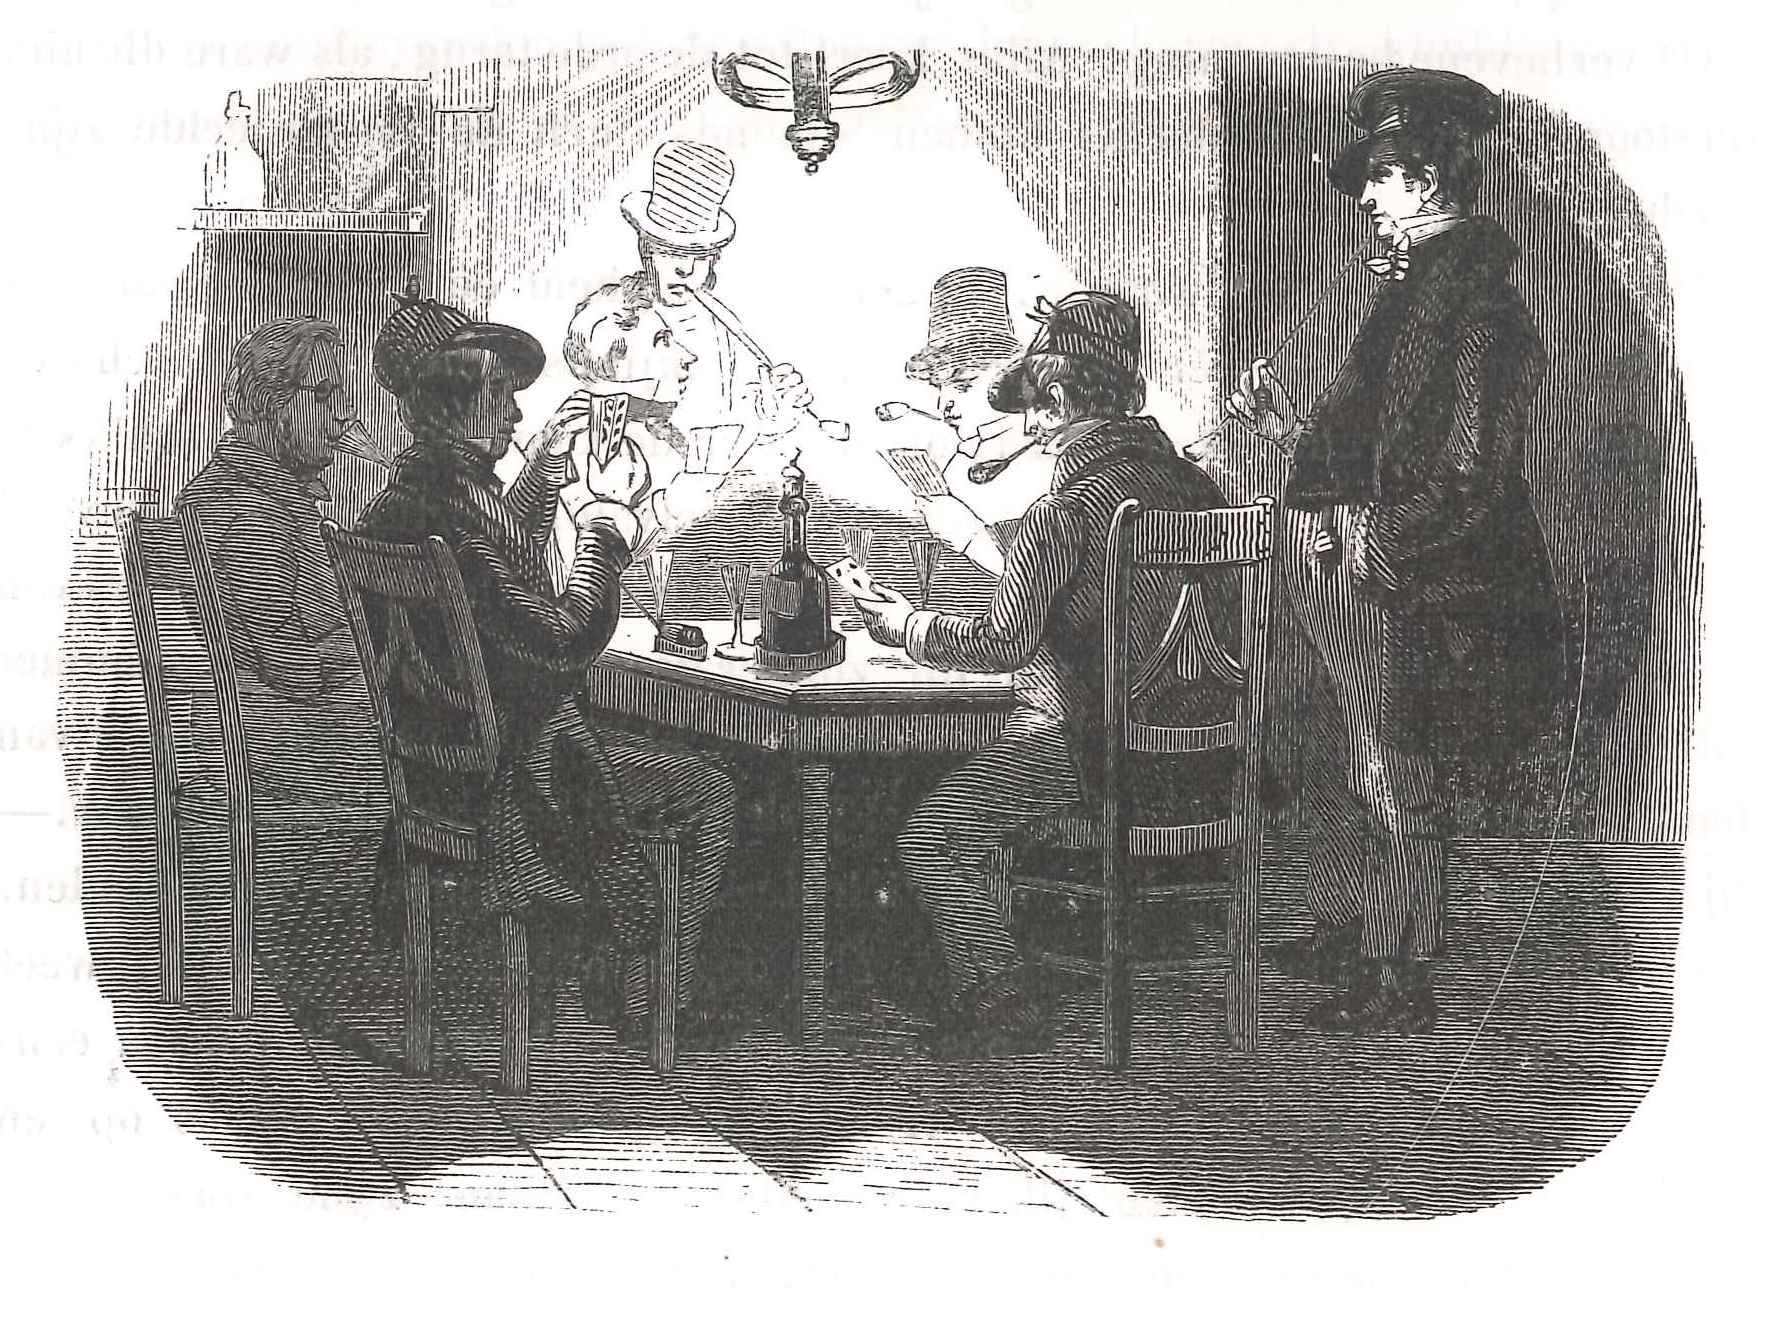 Interieur van een koffiehuis, 'Karakterschetsen', 1841. 